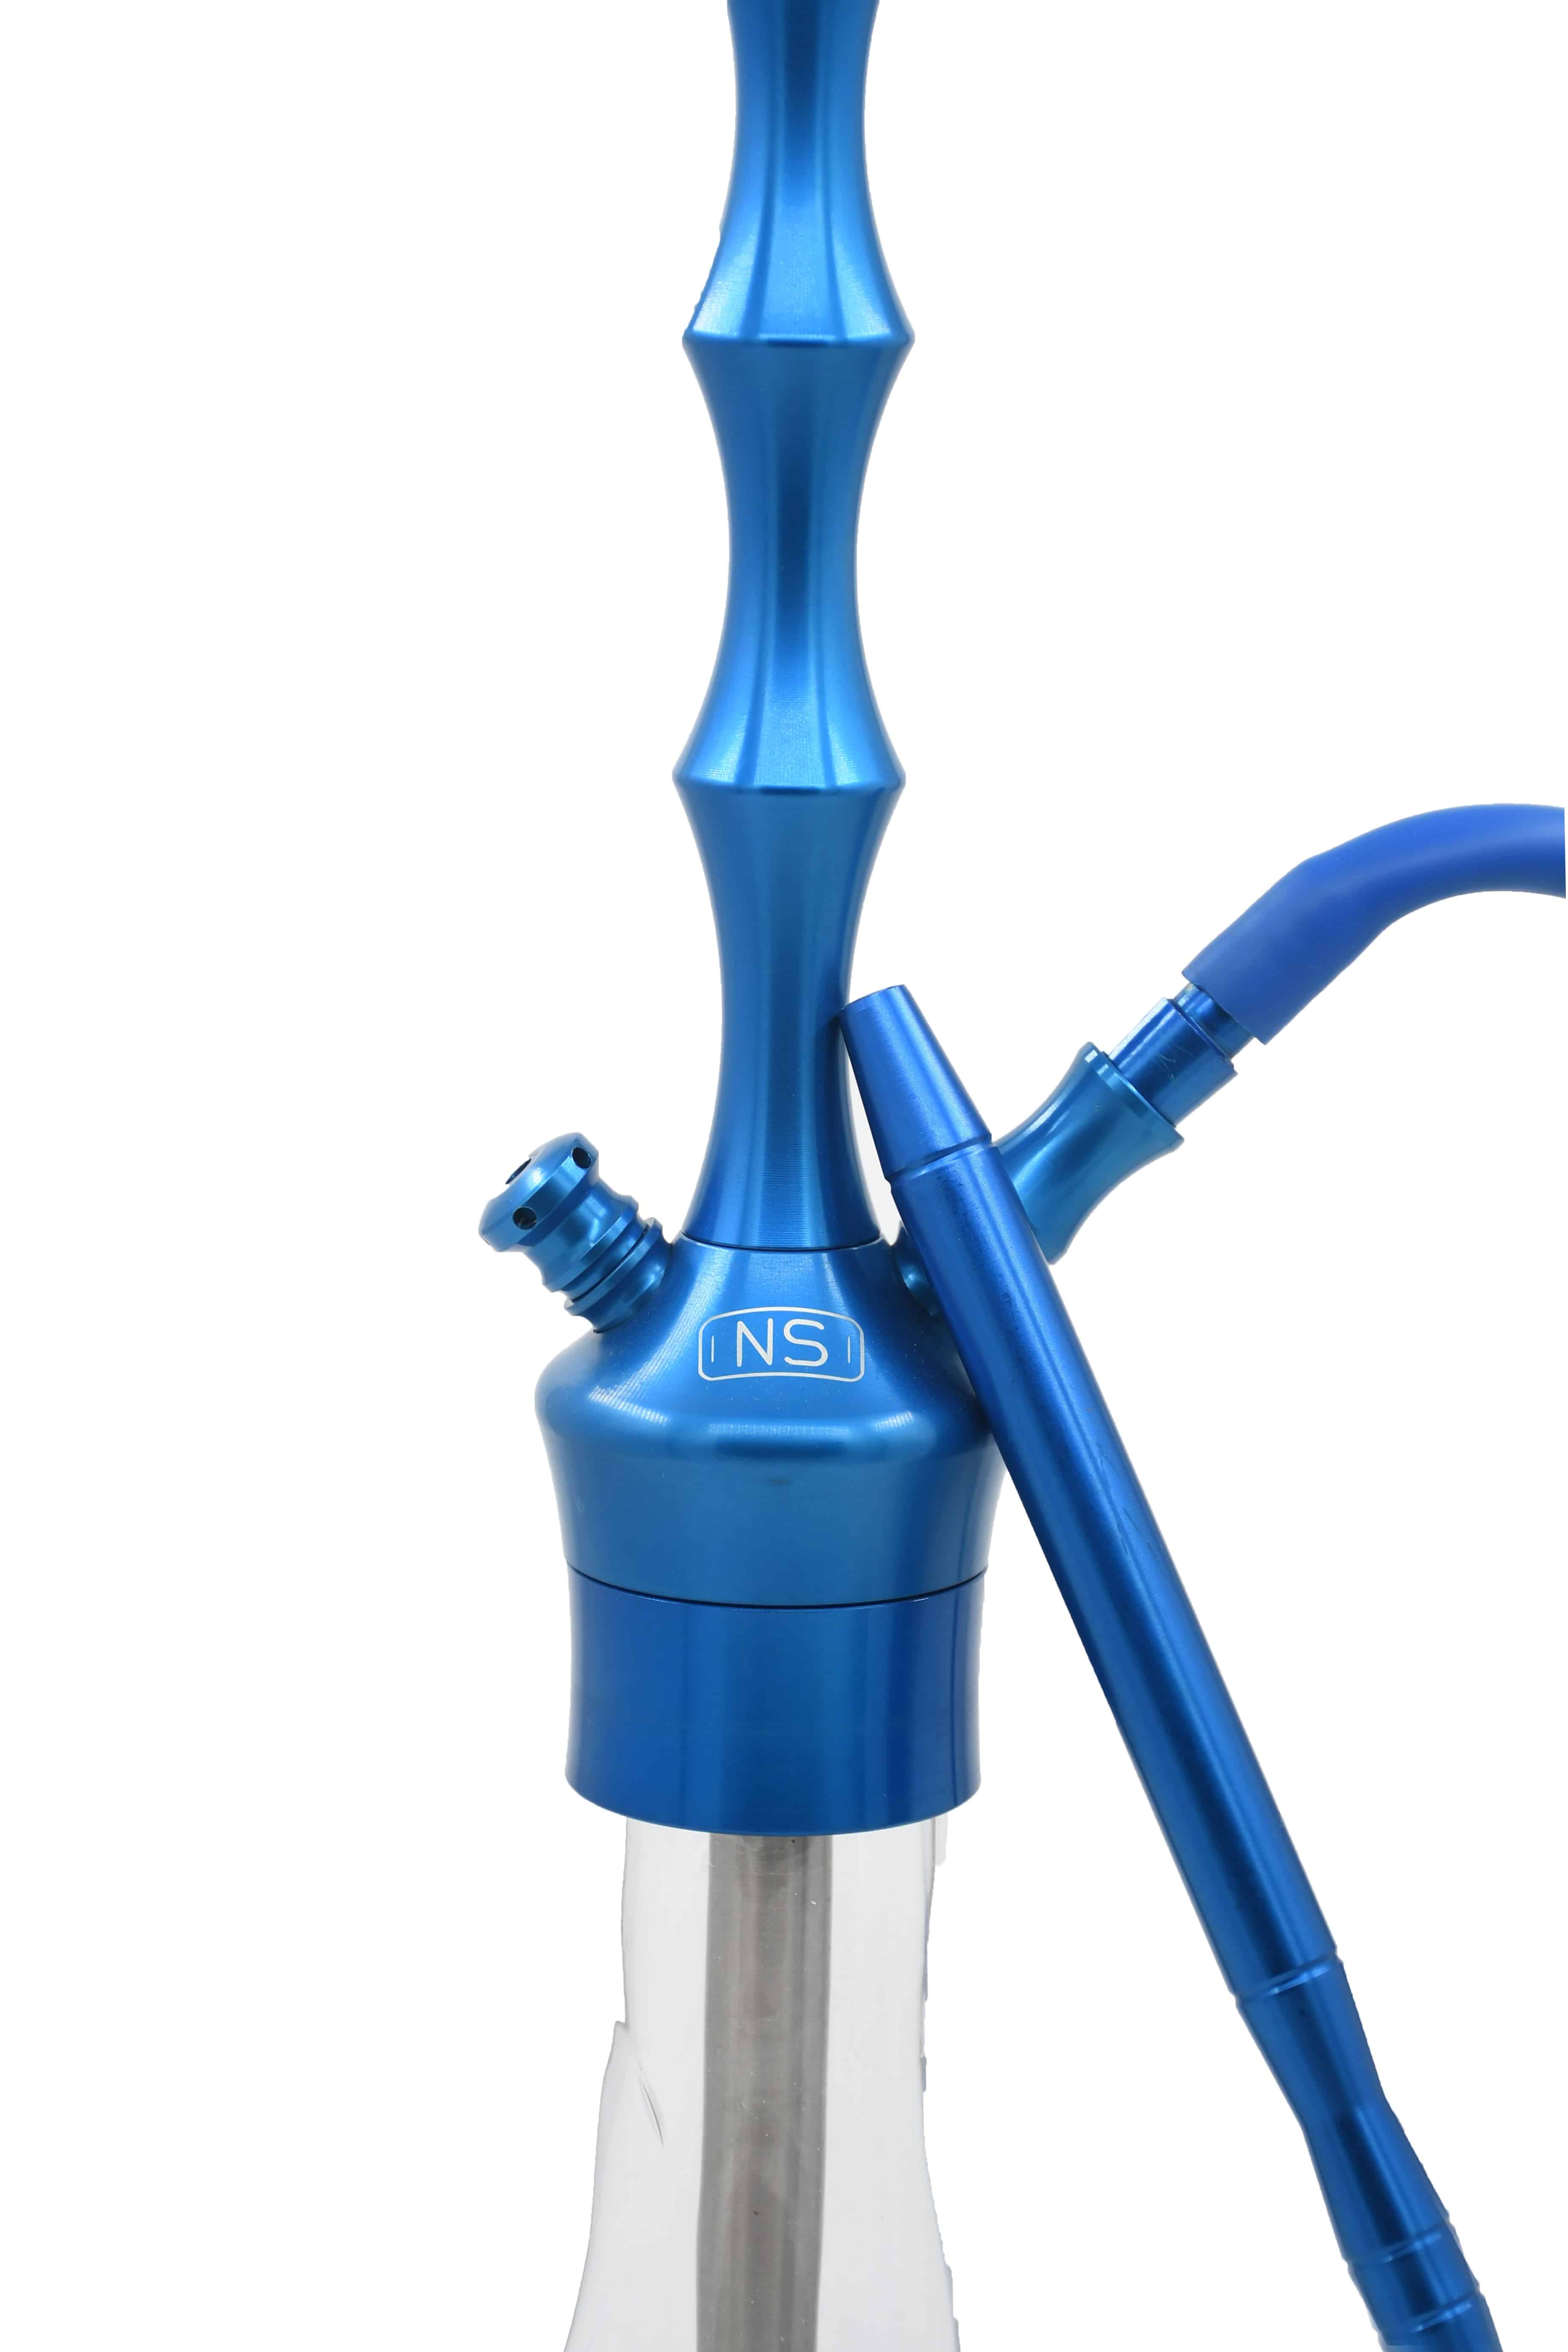 NS Mod03 Prestij Serisi Alüminyum Nargile Takımı Full Set – Mavi